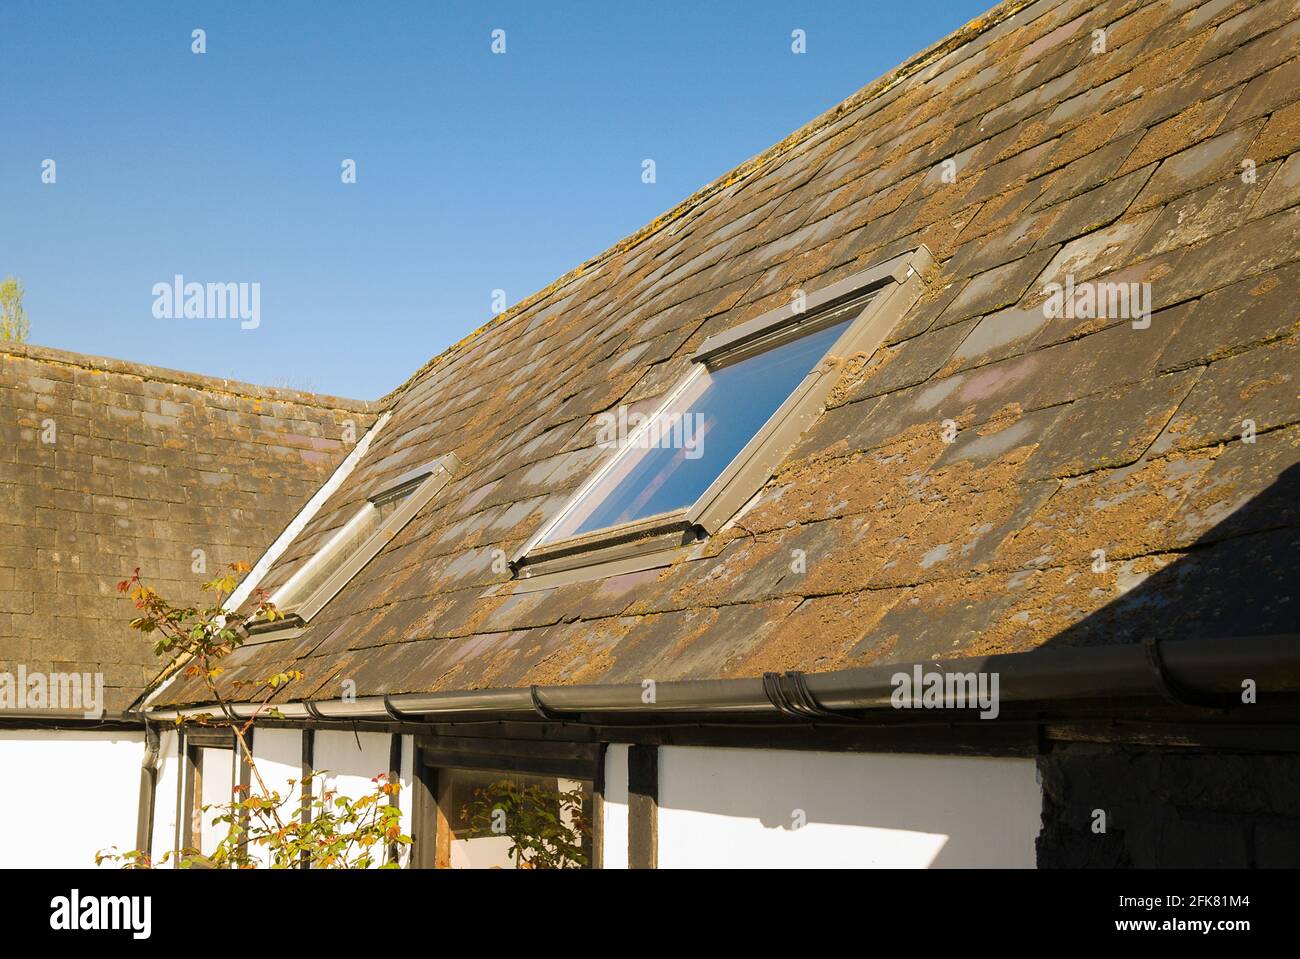 Un vecchio fienile con tetto di ardesia coperto di mossi e licheni. Notare l'aggiunta successiva di due luci sul tetto nel Regno Unito Foto Stock